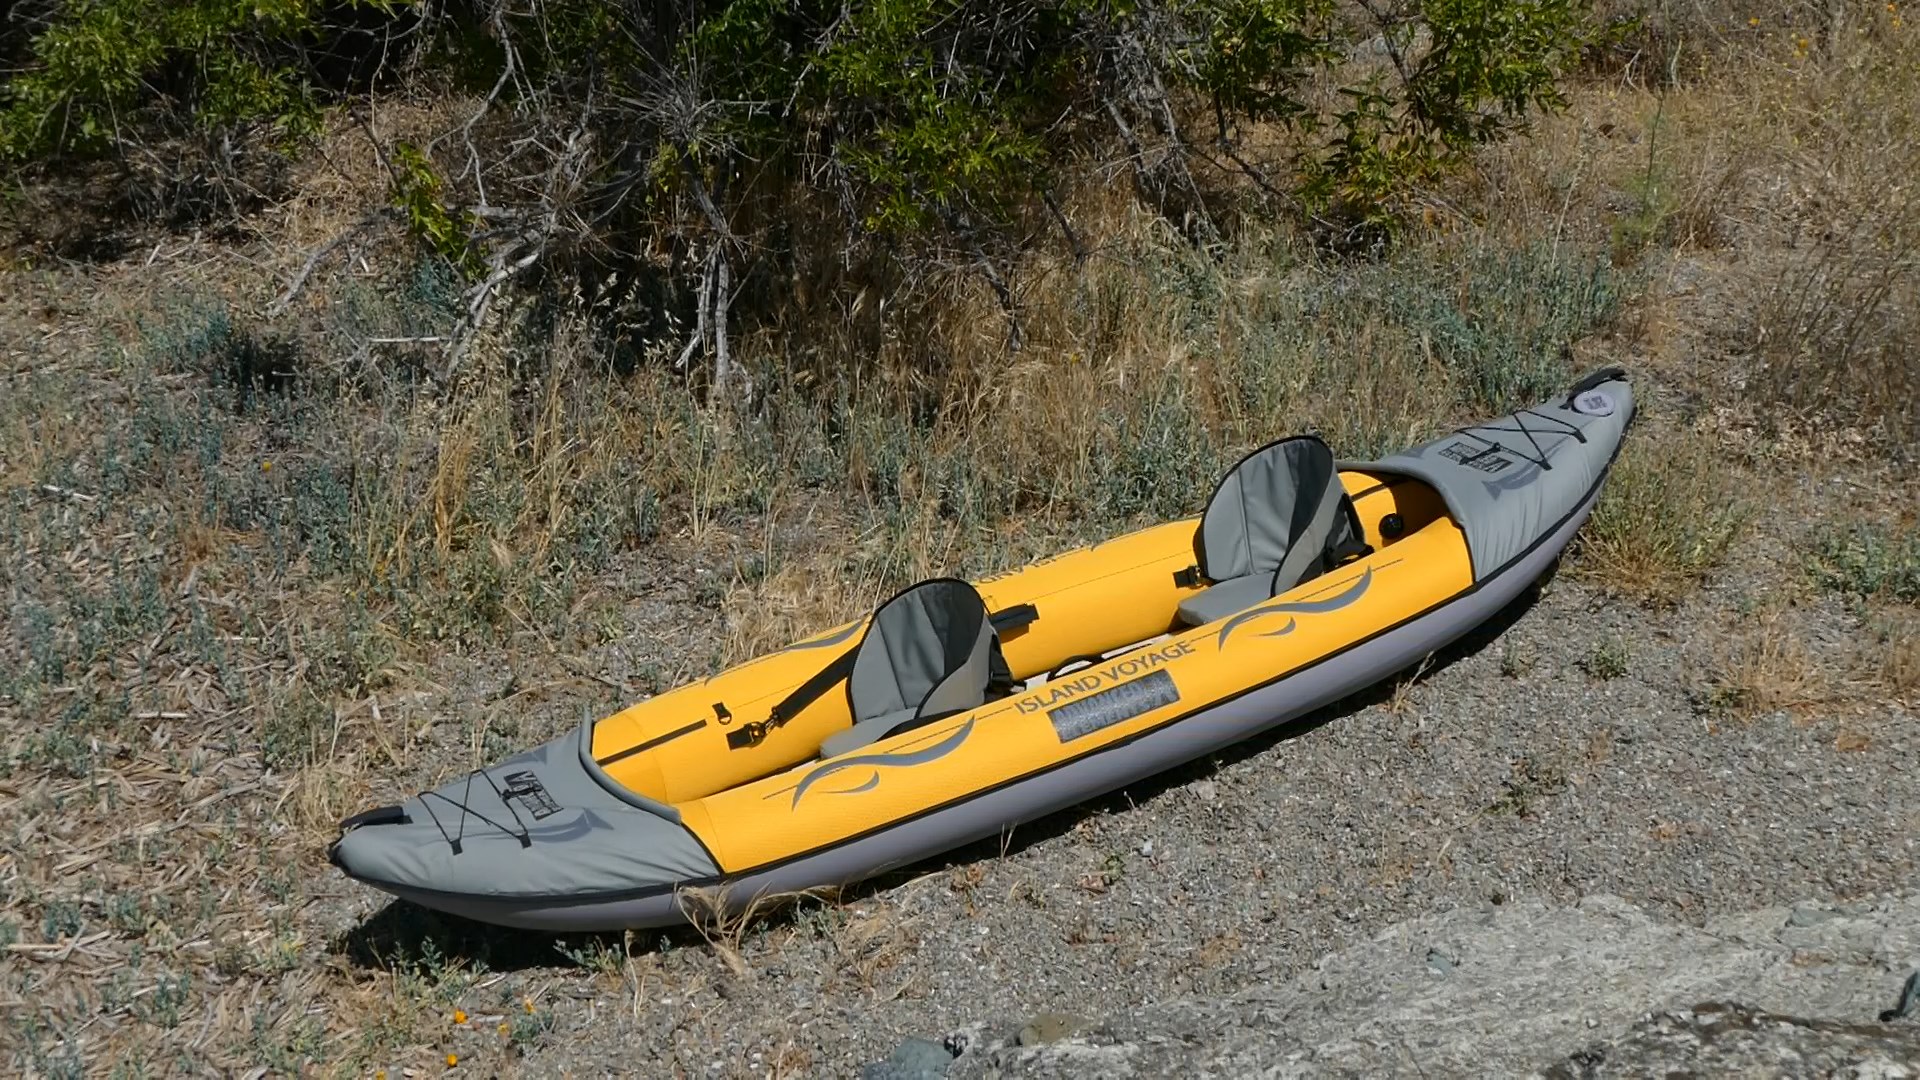 island voyage 2 kayak review